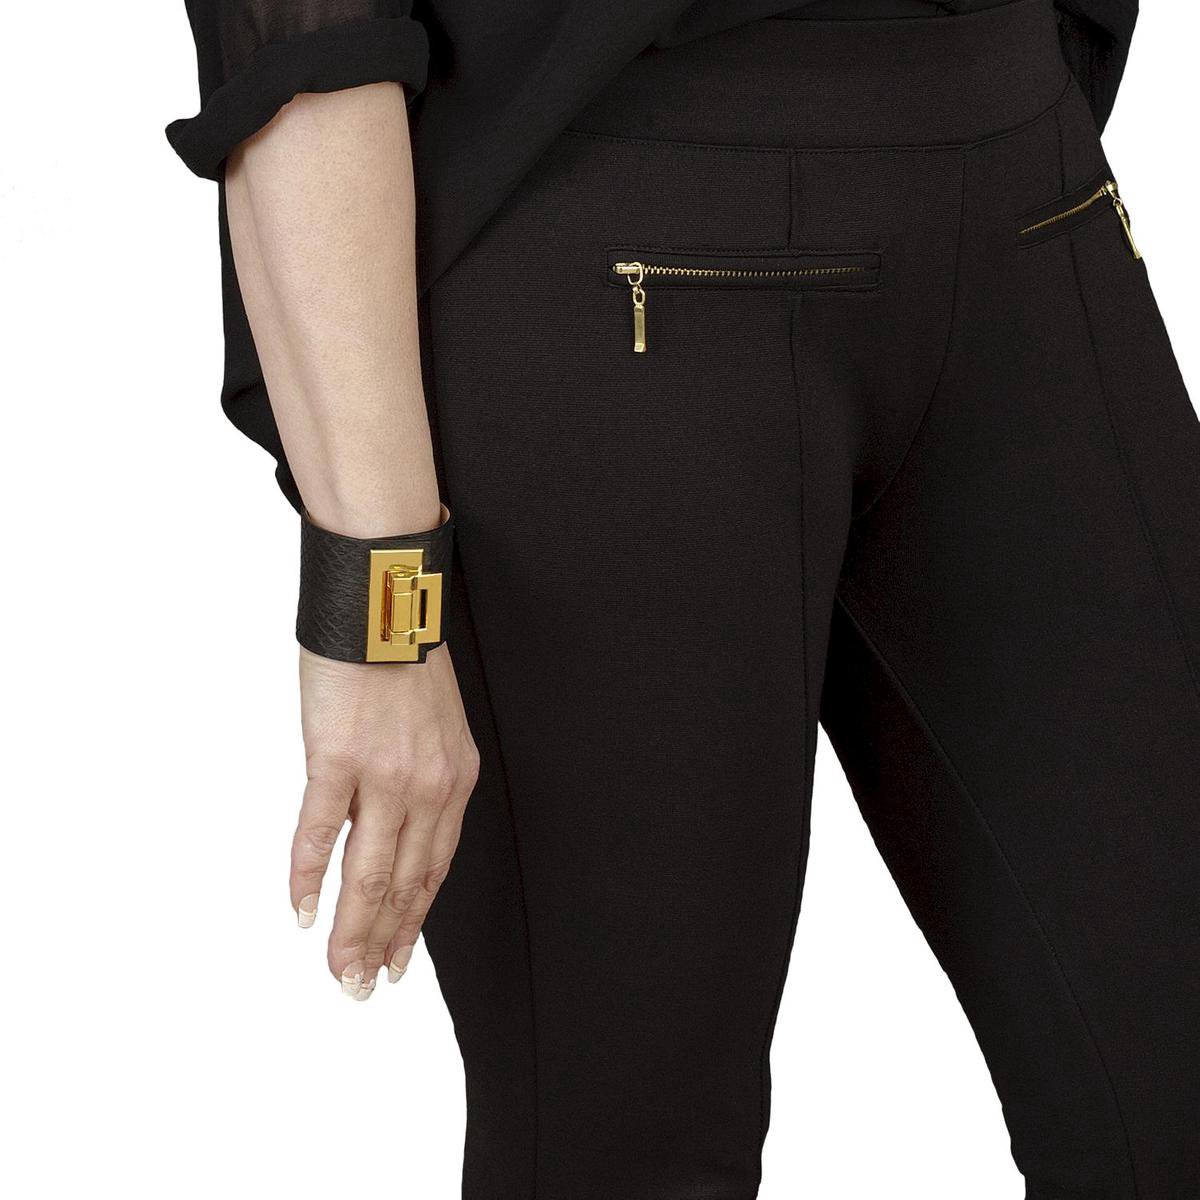 NEW SALE van 94,00 EUR afgeprijsd, BELUCIA dames armband ZK-01 kalfsleer mat zwart, goudkleurig, maat 17 cm